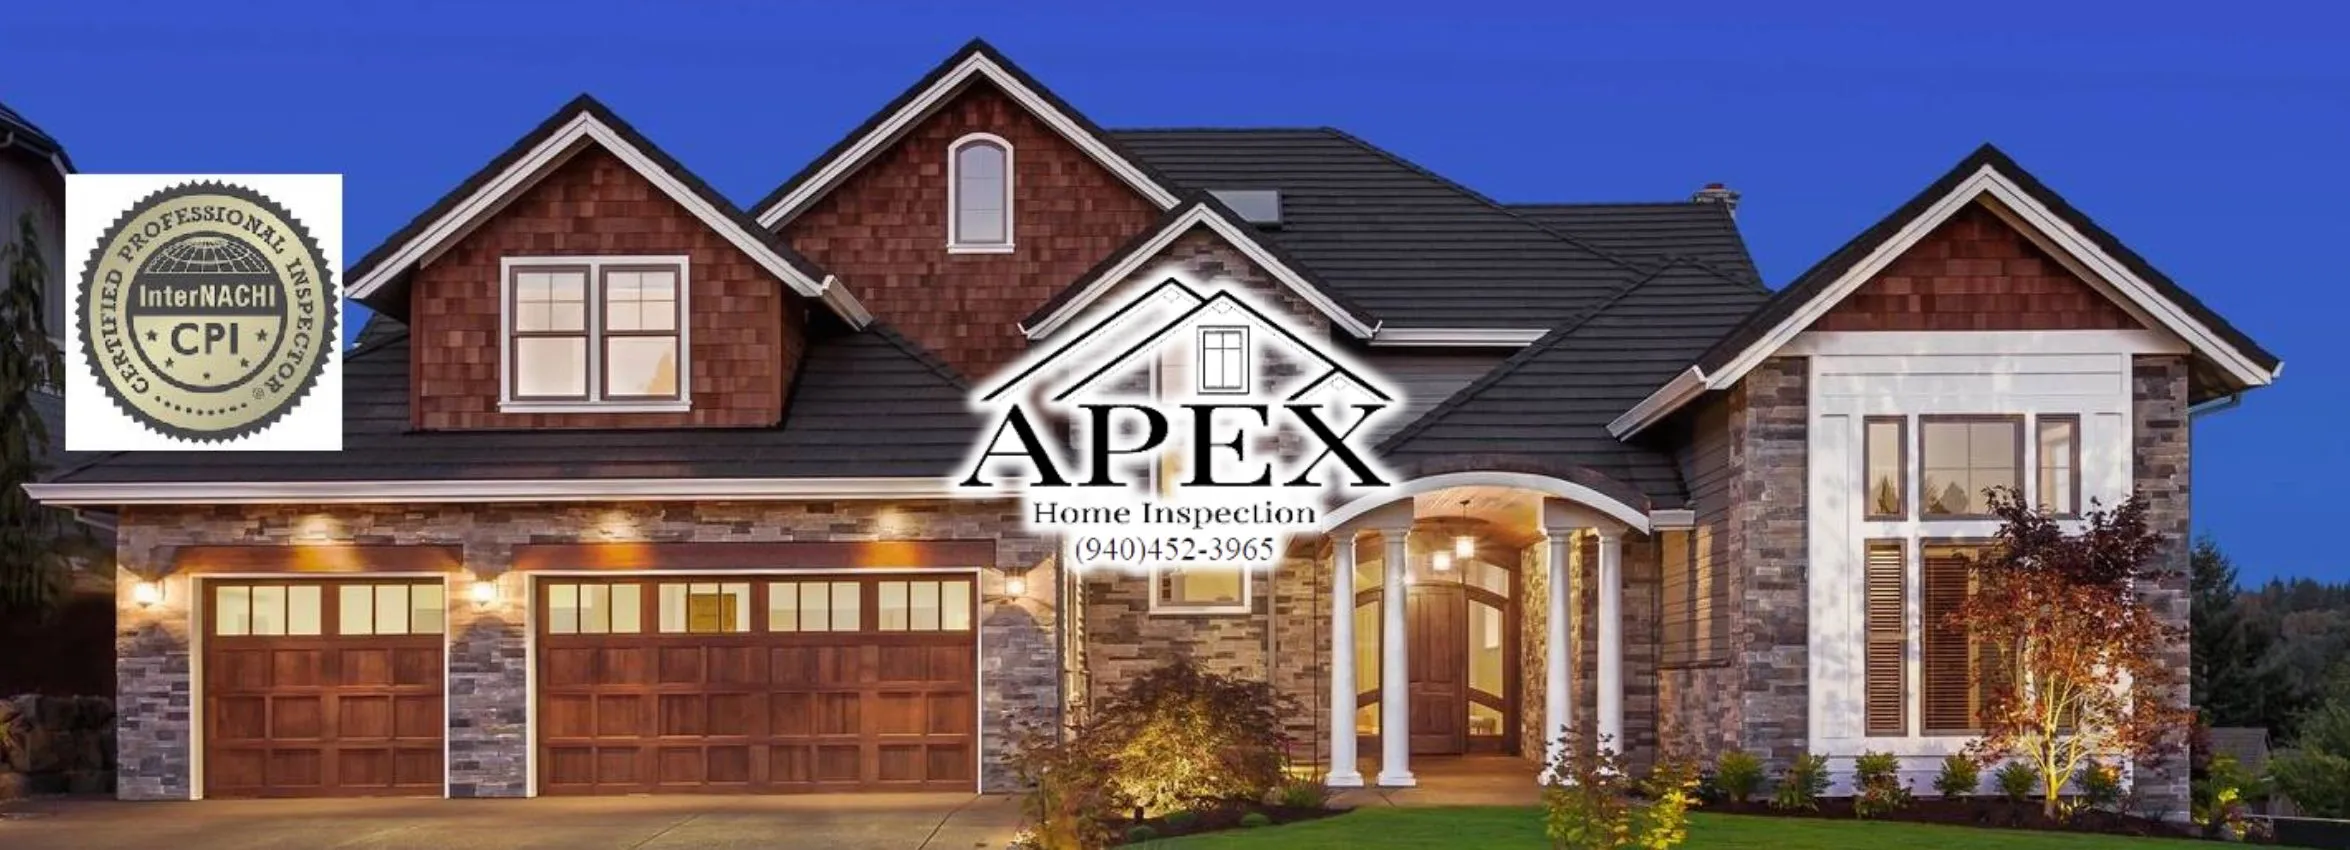 Apex-Home-Inspection_Desktop_ET